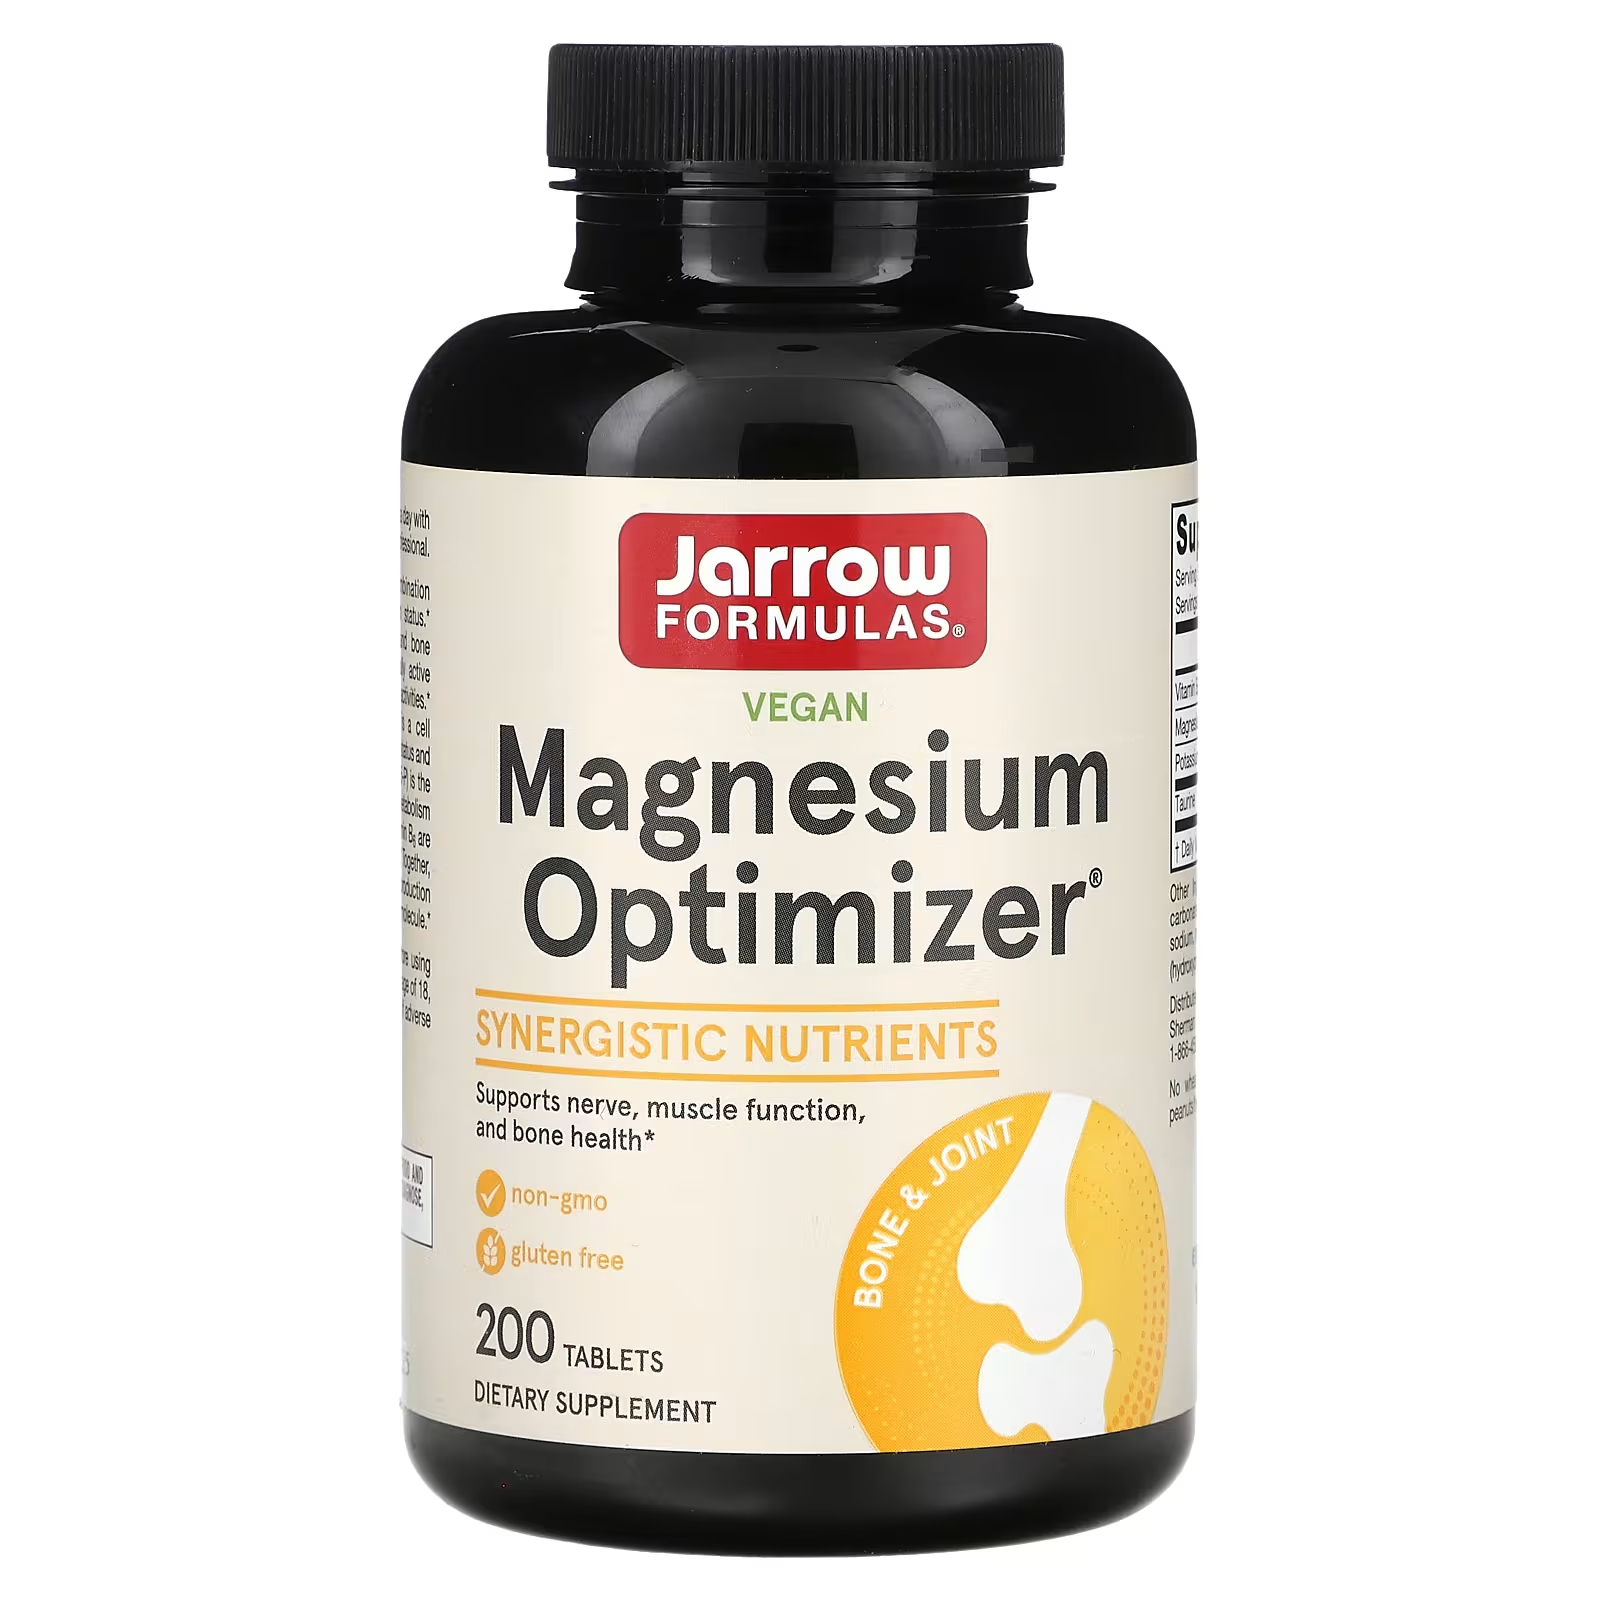 Пищевая добавка Jarrow Formulas Vegan Magnesium Optimizer, 200 таблеток цена и фото